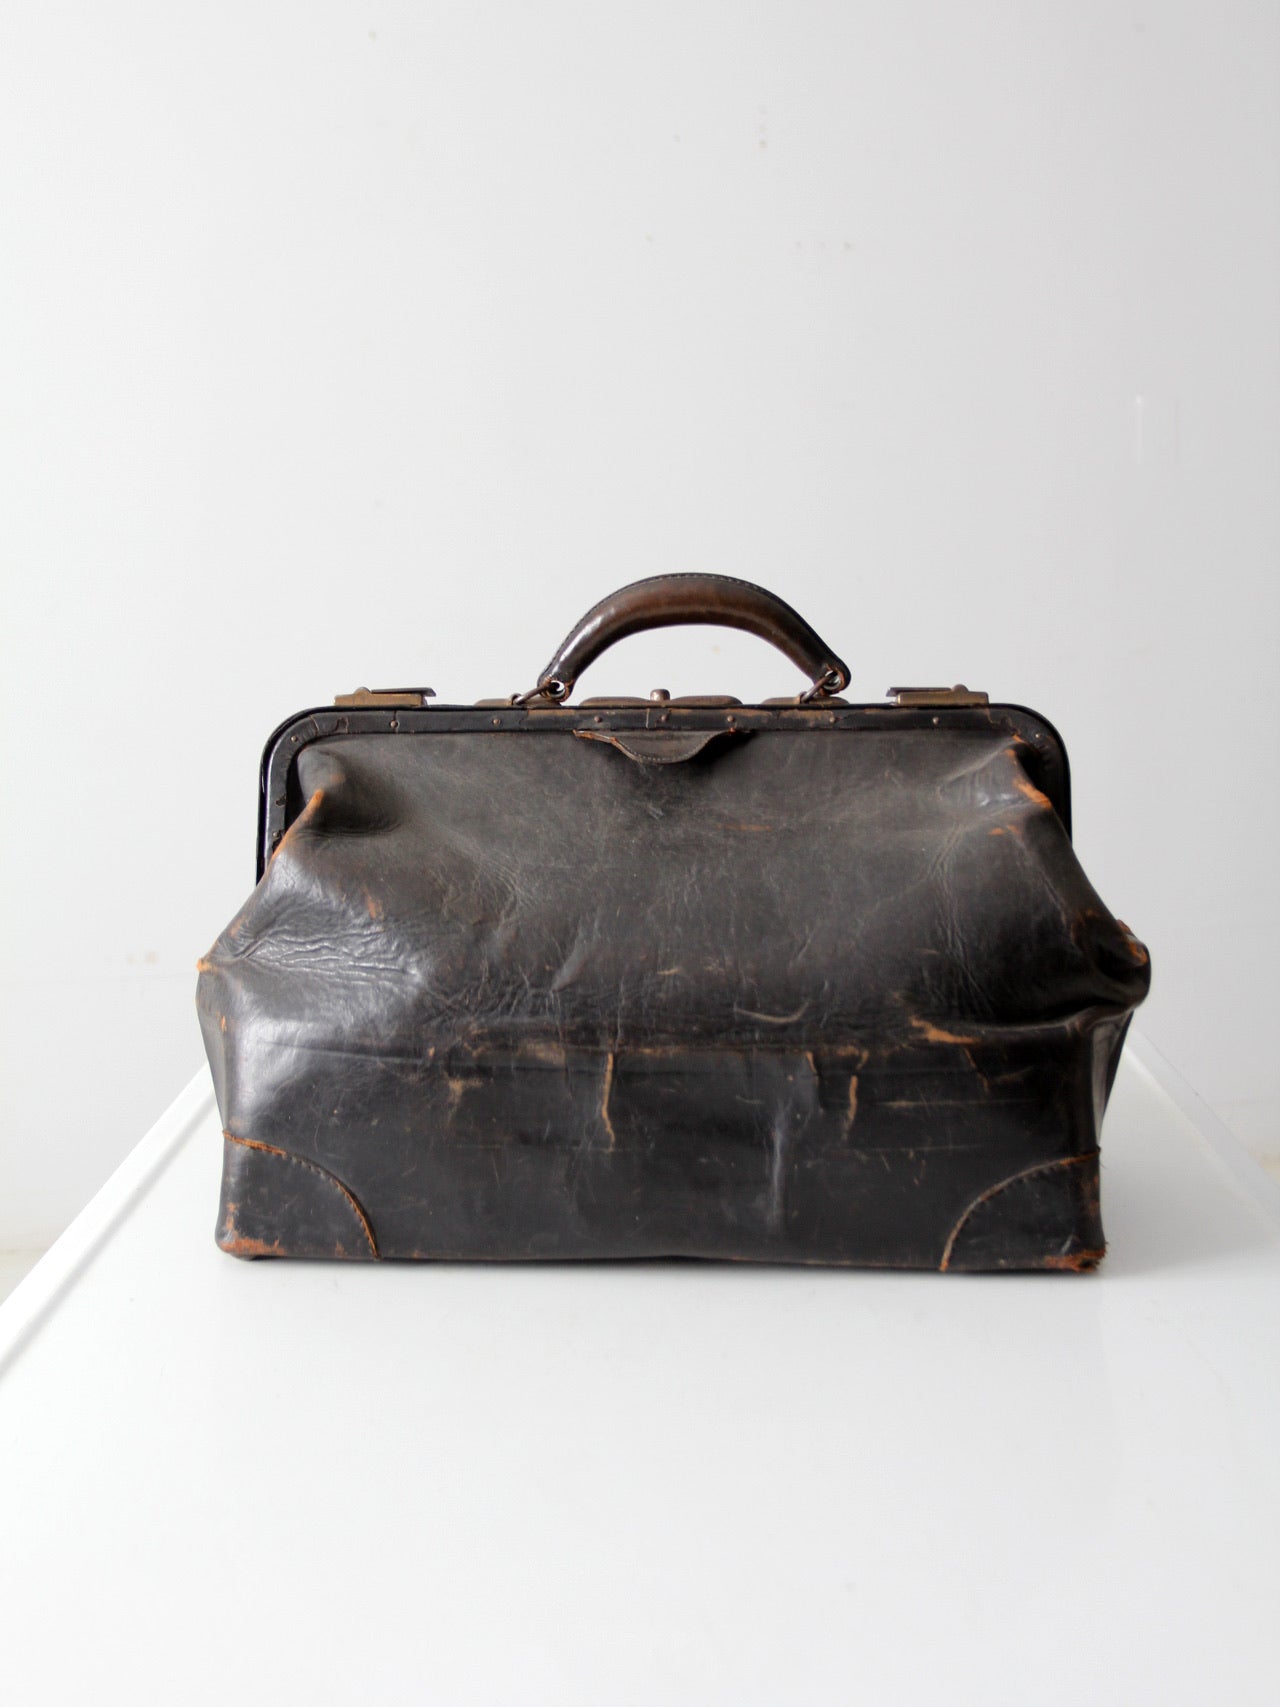 antique doctor's bag